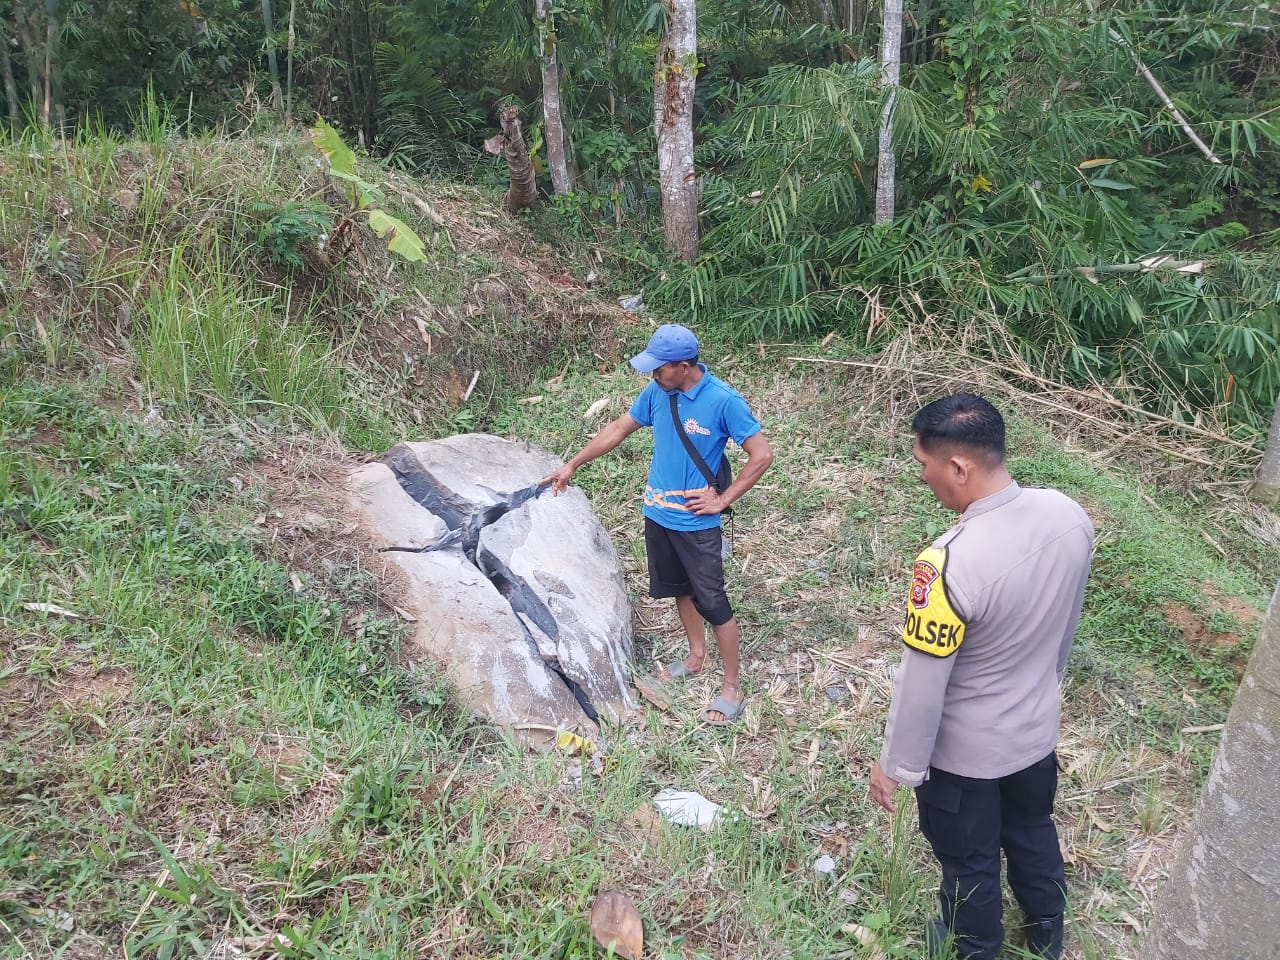 Kejadian nahas menimpa seorang tukang batu dengan inisial UK (62) yang tewas di duga akibat kecelakaan saat bekerja di Kampung Warungpeuteuy, Desa Nyalindung, Kecamatan Nyalindung. Istimewa.